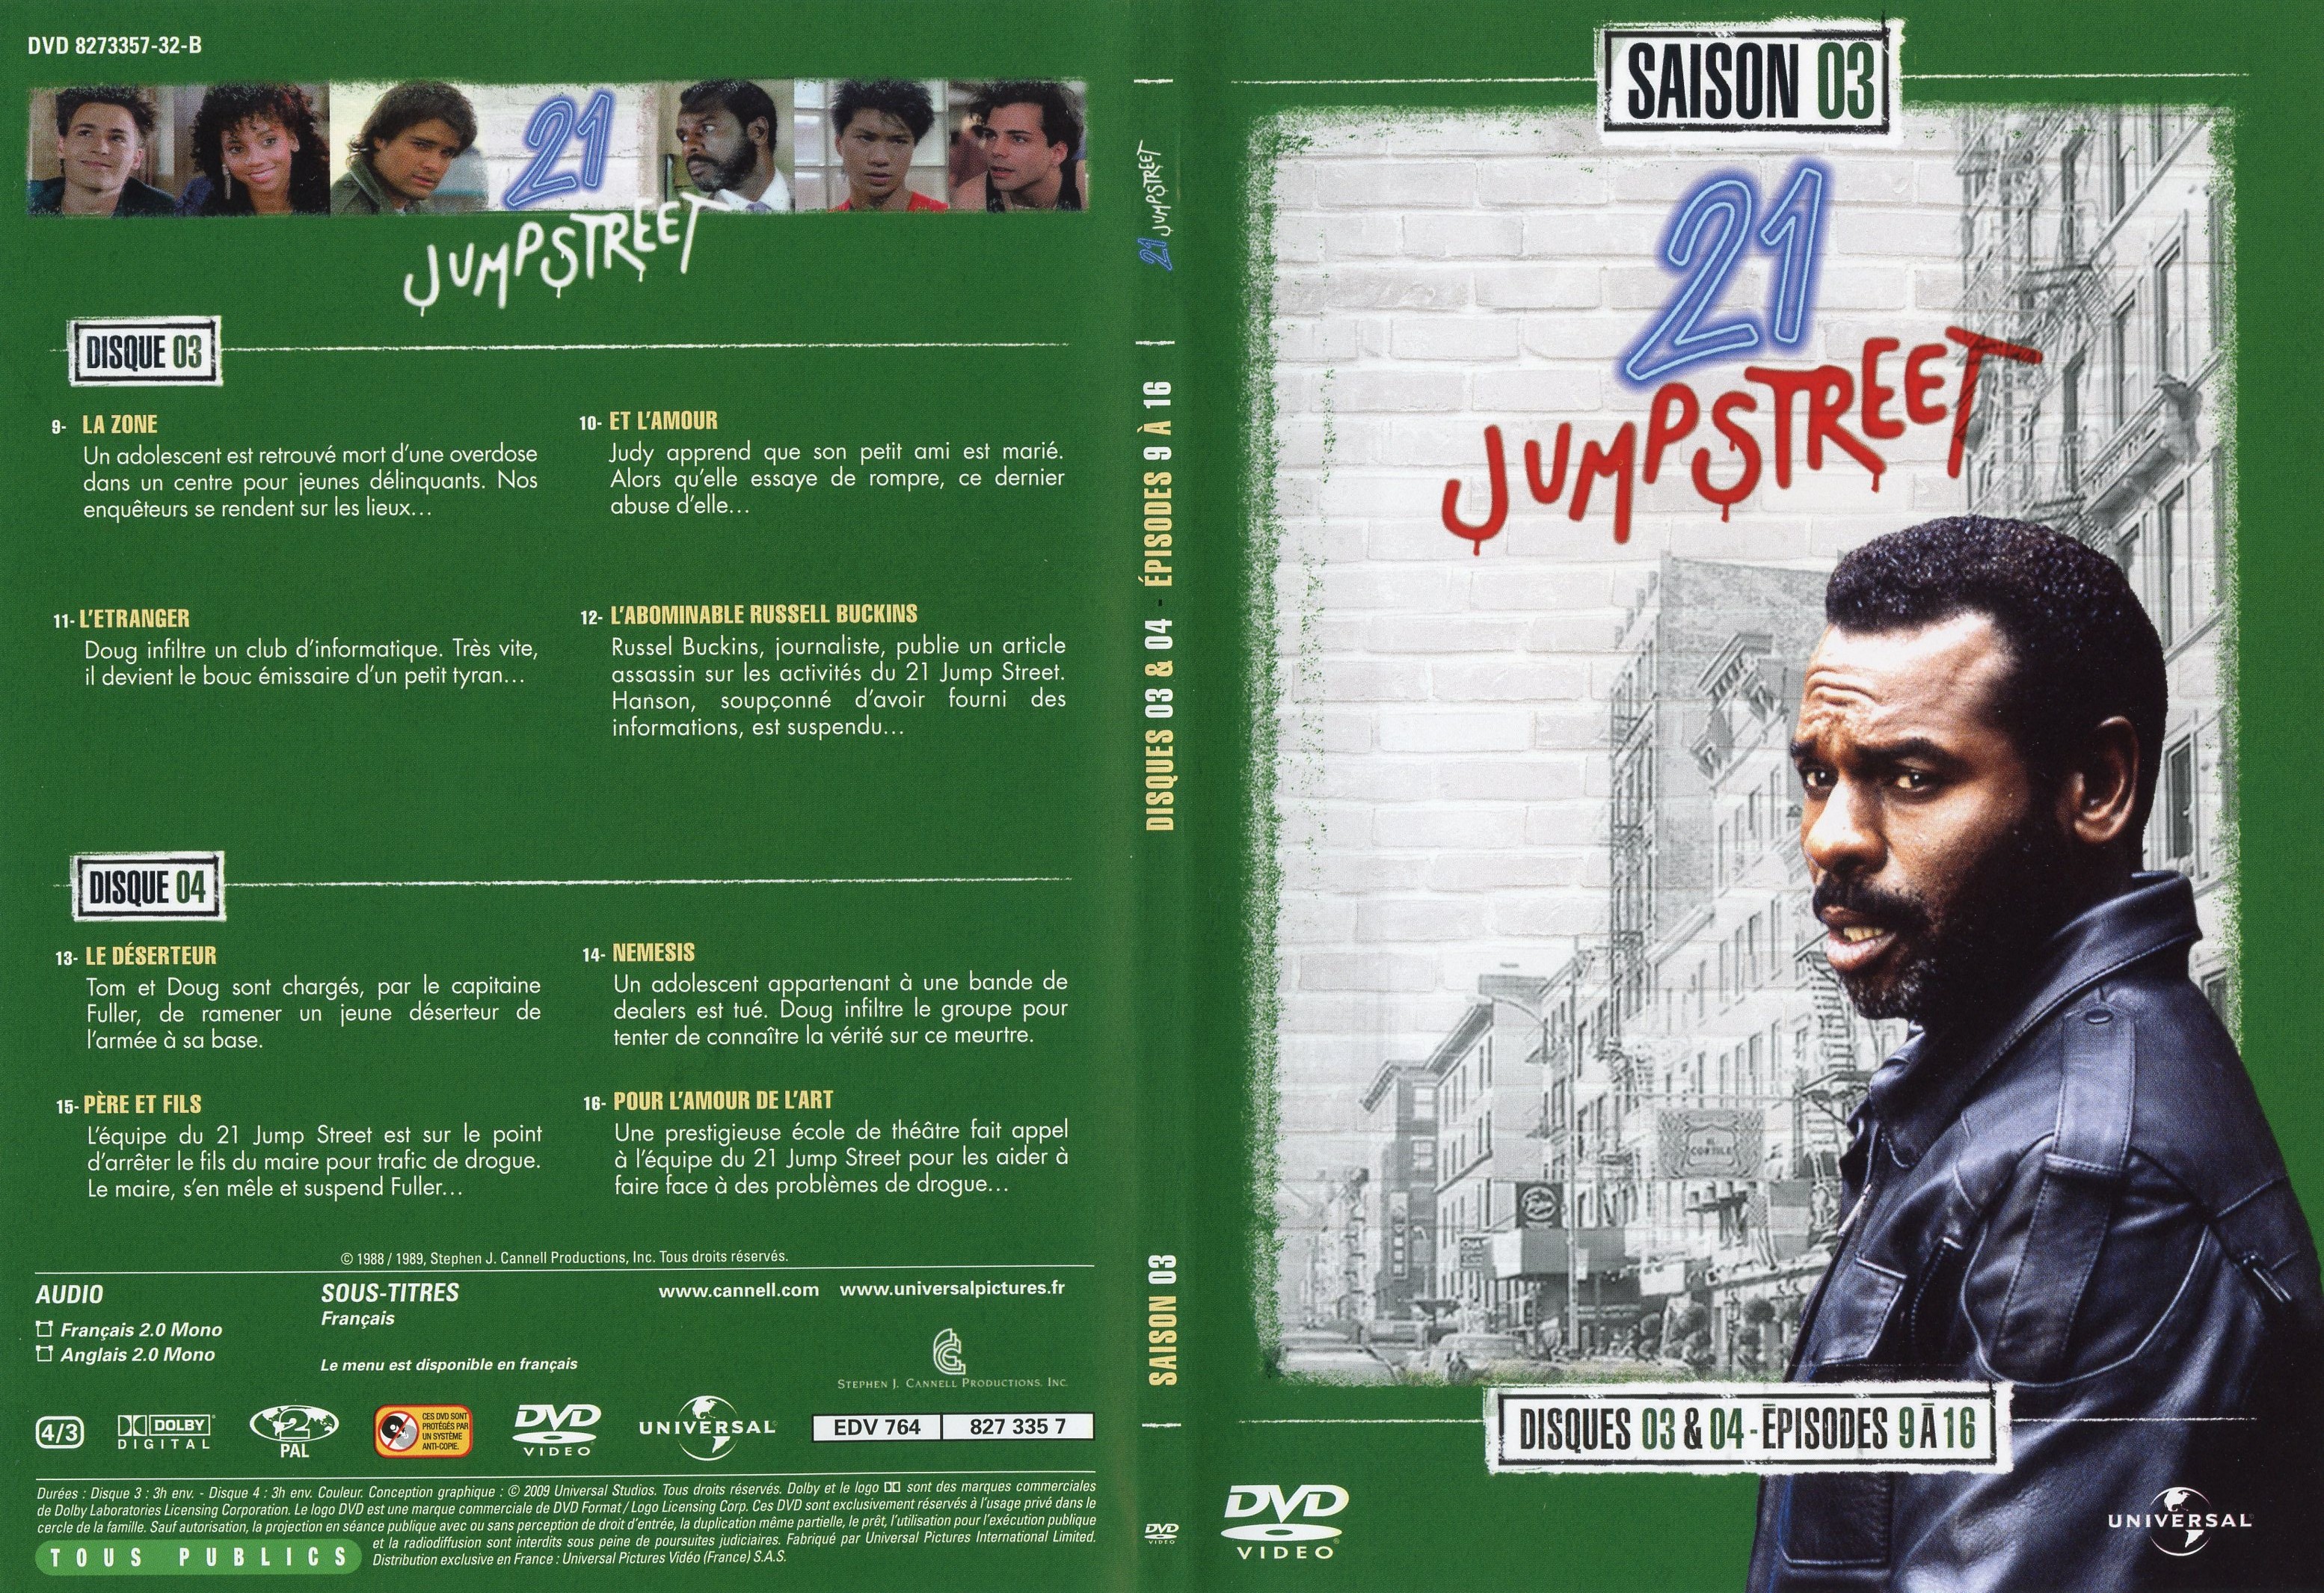 Jaquette DVD 21 jump street Saison 3 DVD 2